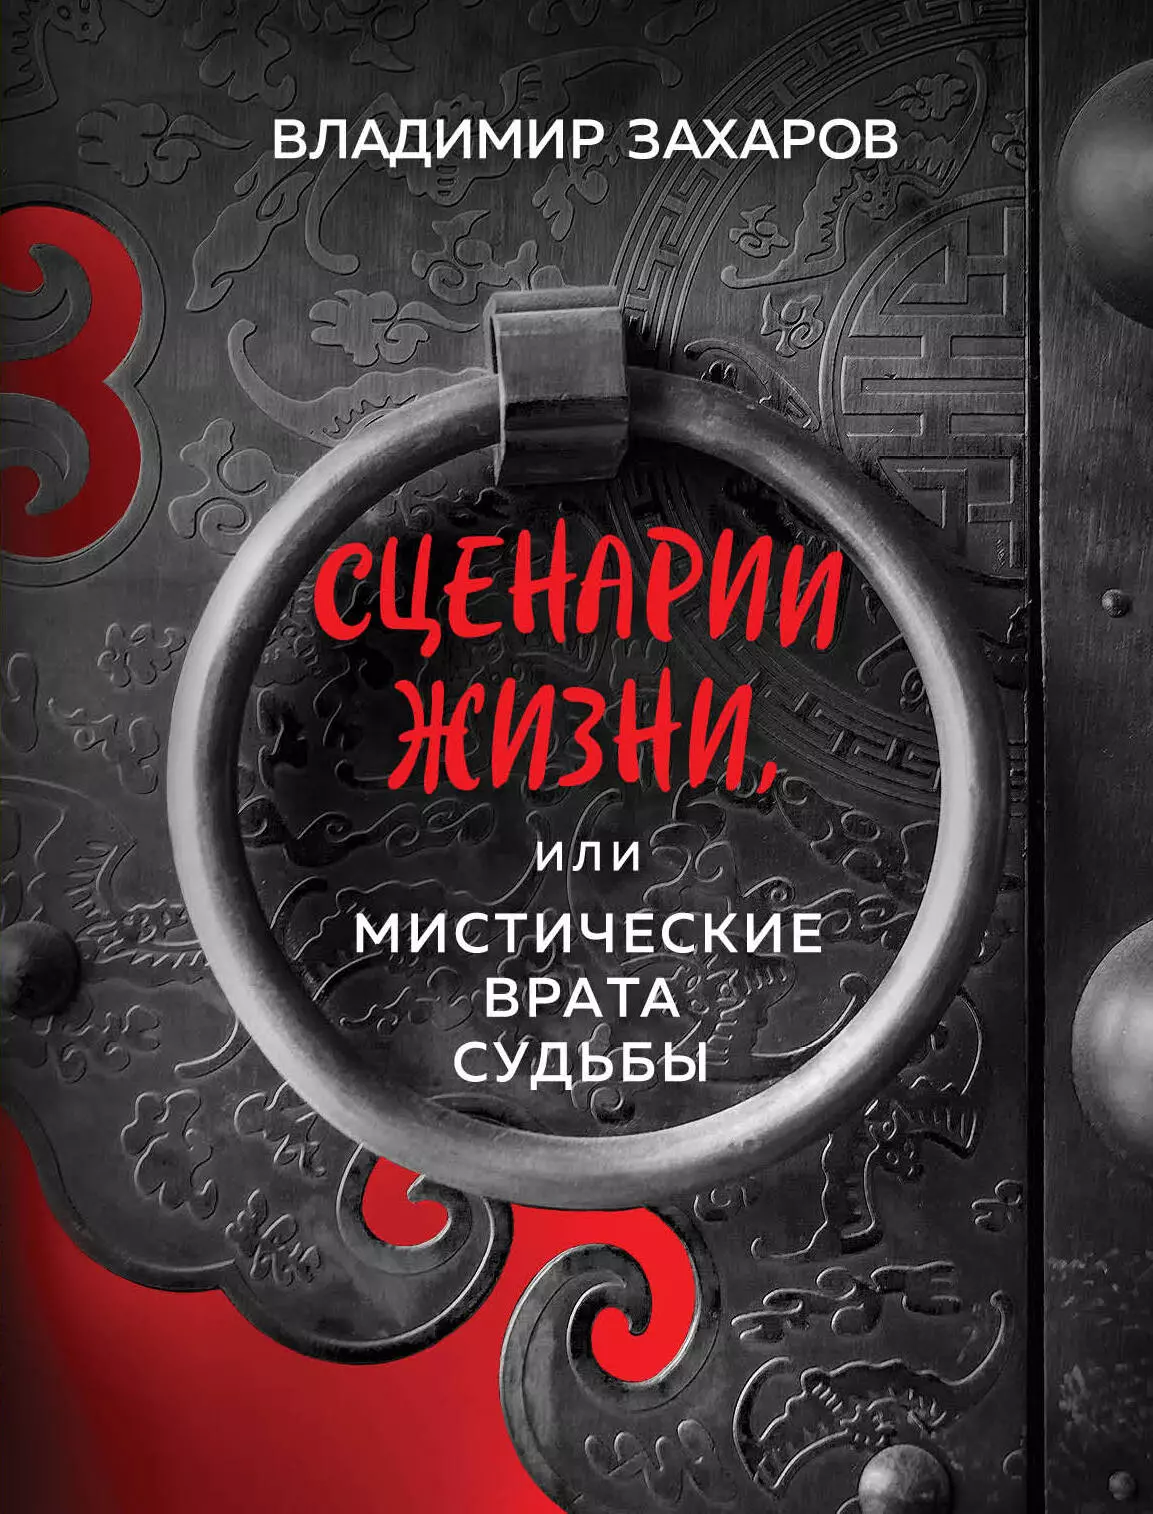 Захаров Владимир Сценарии жизни, или Мистические Врата Судьбы. Книга 1